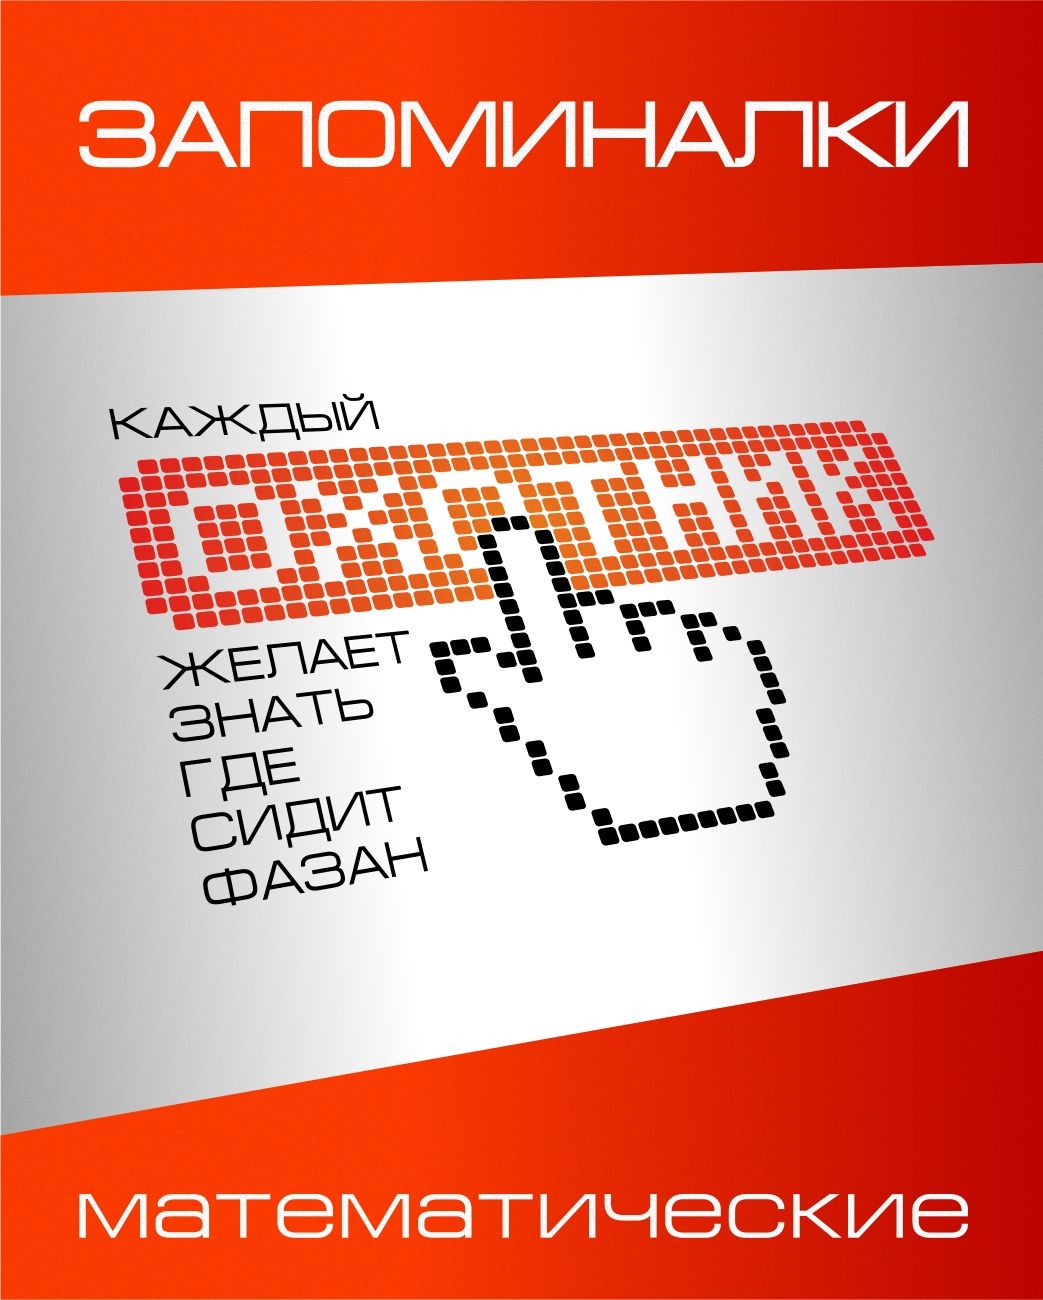 Обложка для электронной книги с запоминалками - дизайнер graphin4ik